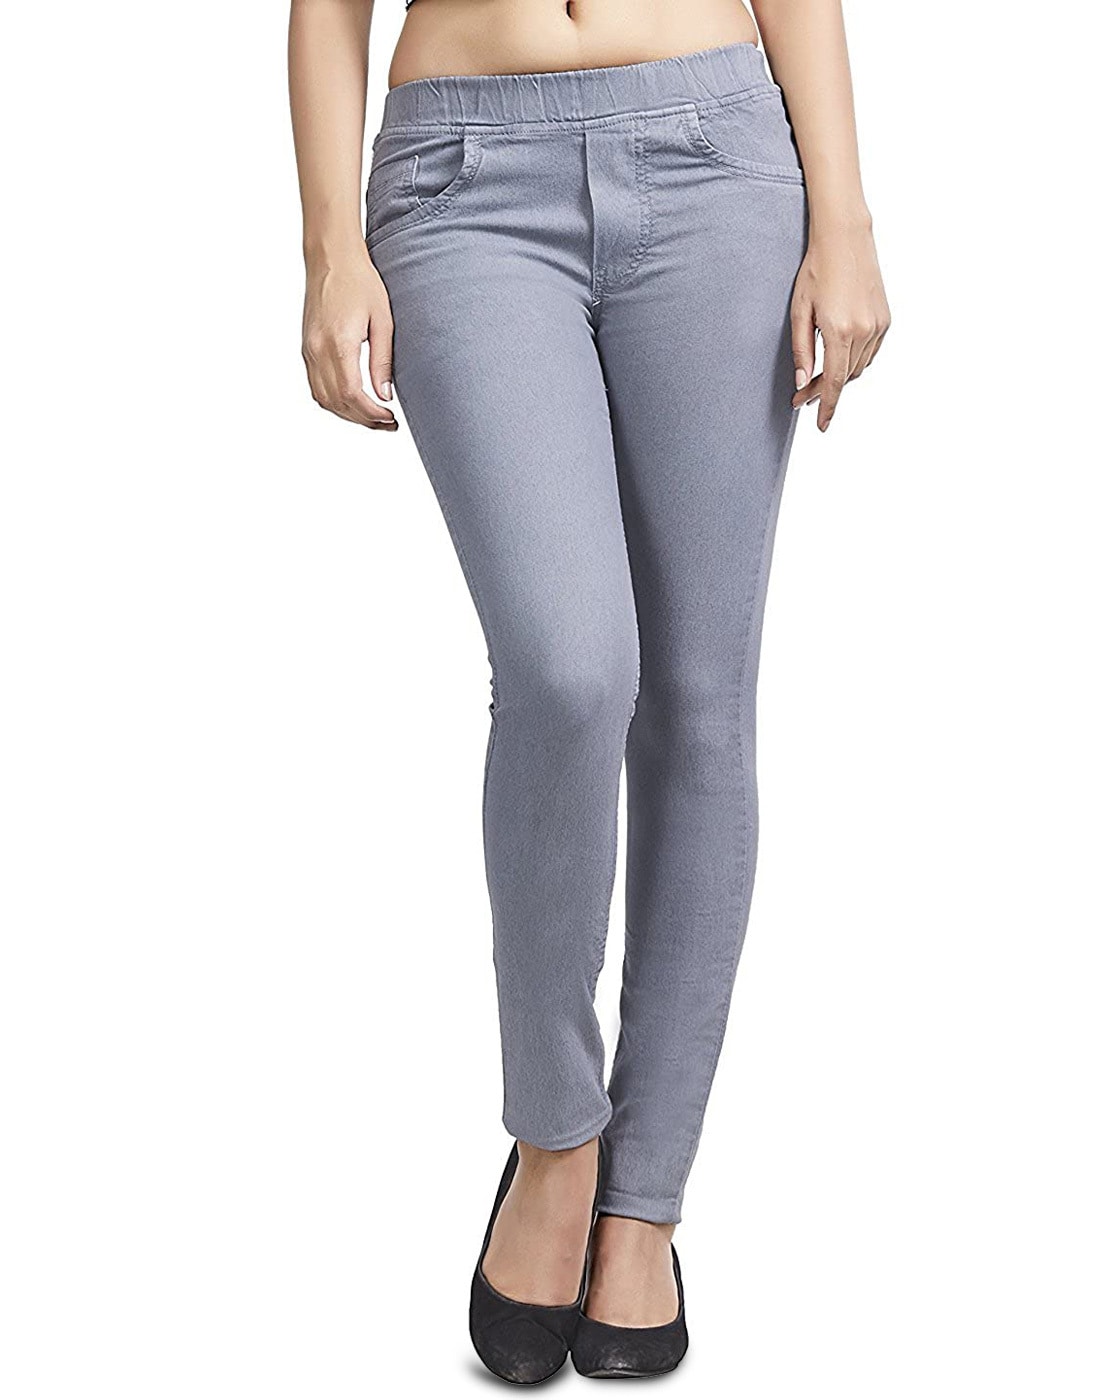 Buy Grey Jeans & Jeggings for Women by ADBUCKS Online